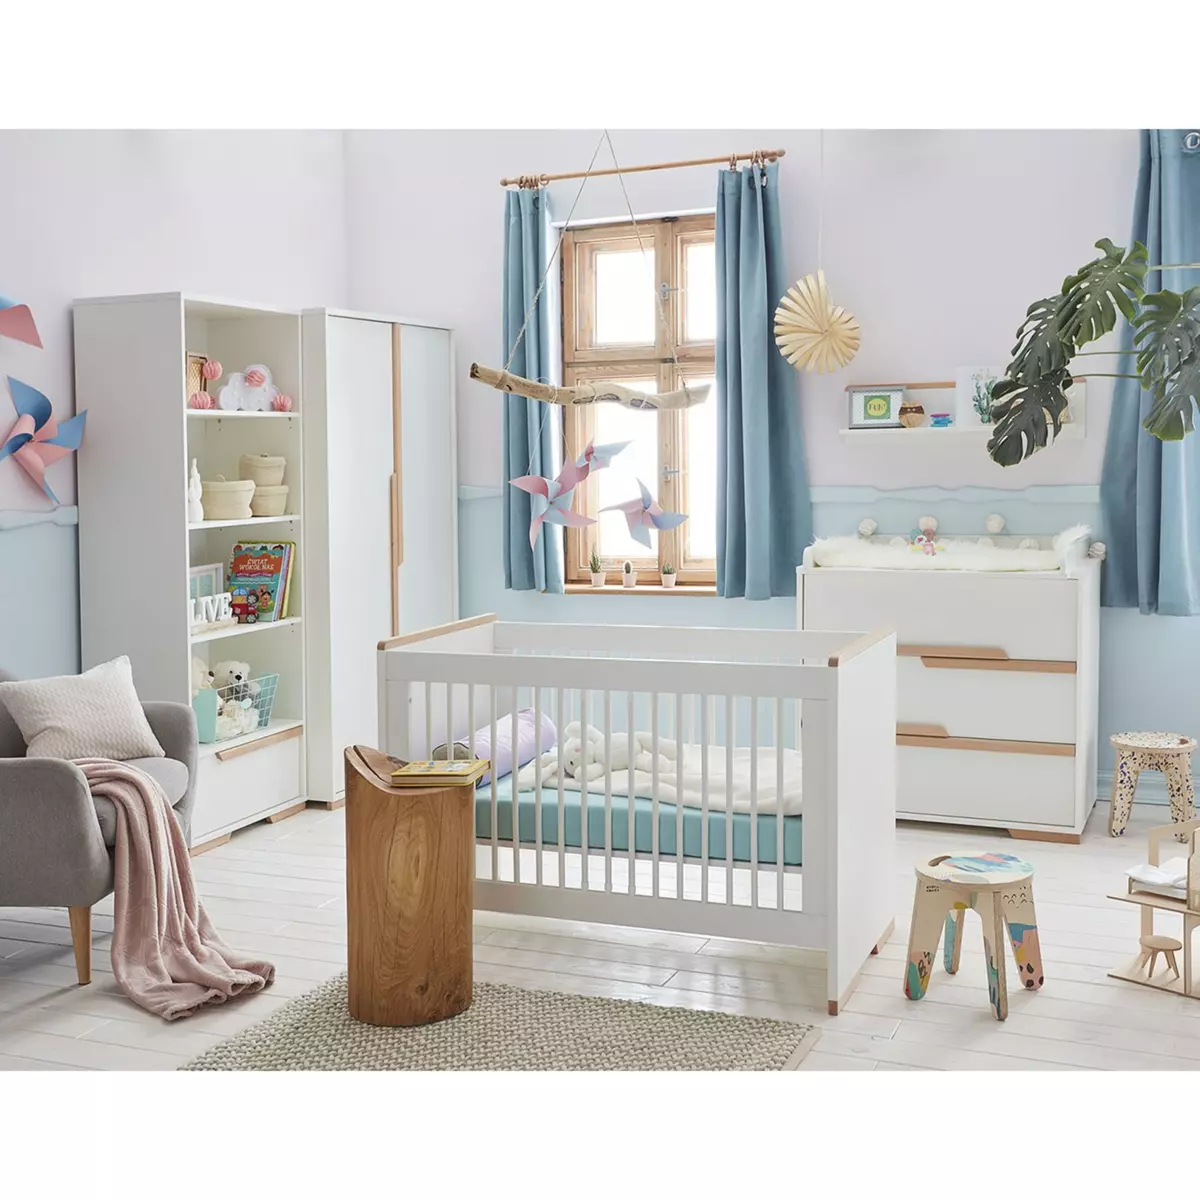 PINIO Chambre complète lit bébé 60x120 - commode à langer - armoire 2 portes Snap - Blanc et bois